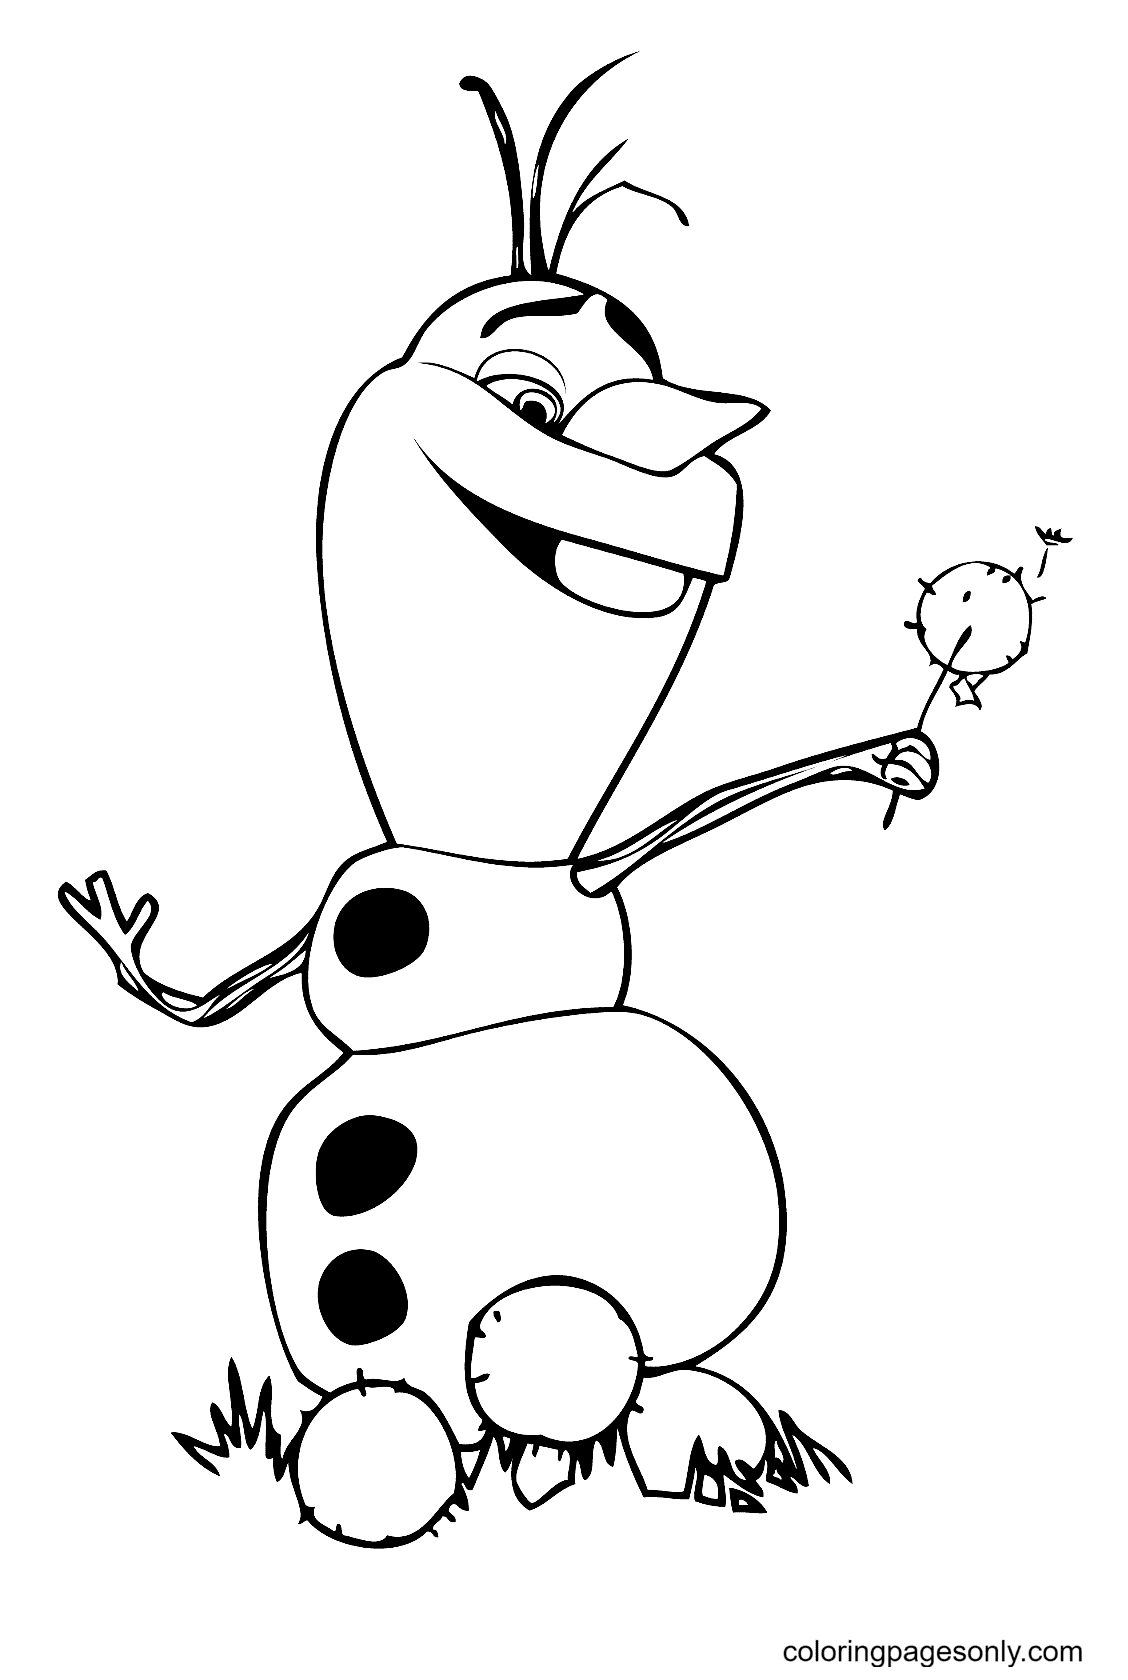 Olaf Boneco de Neve de Frozen de Olaf